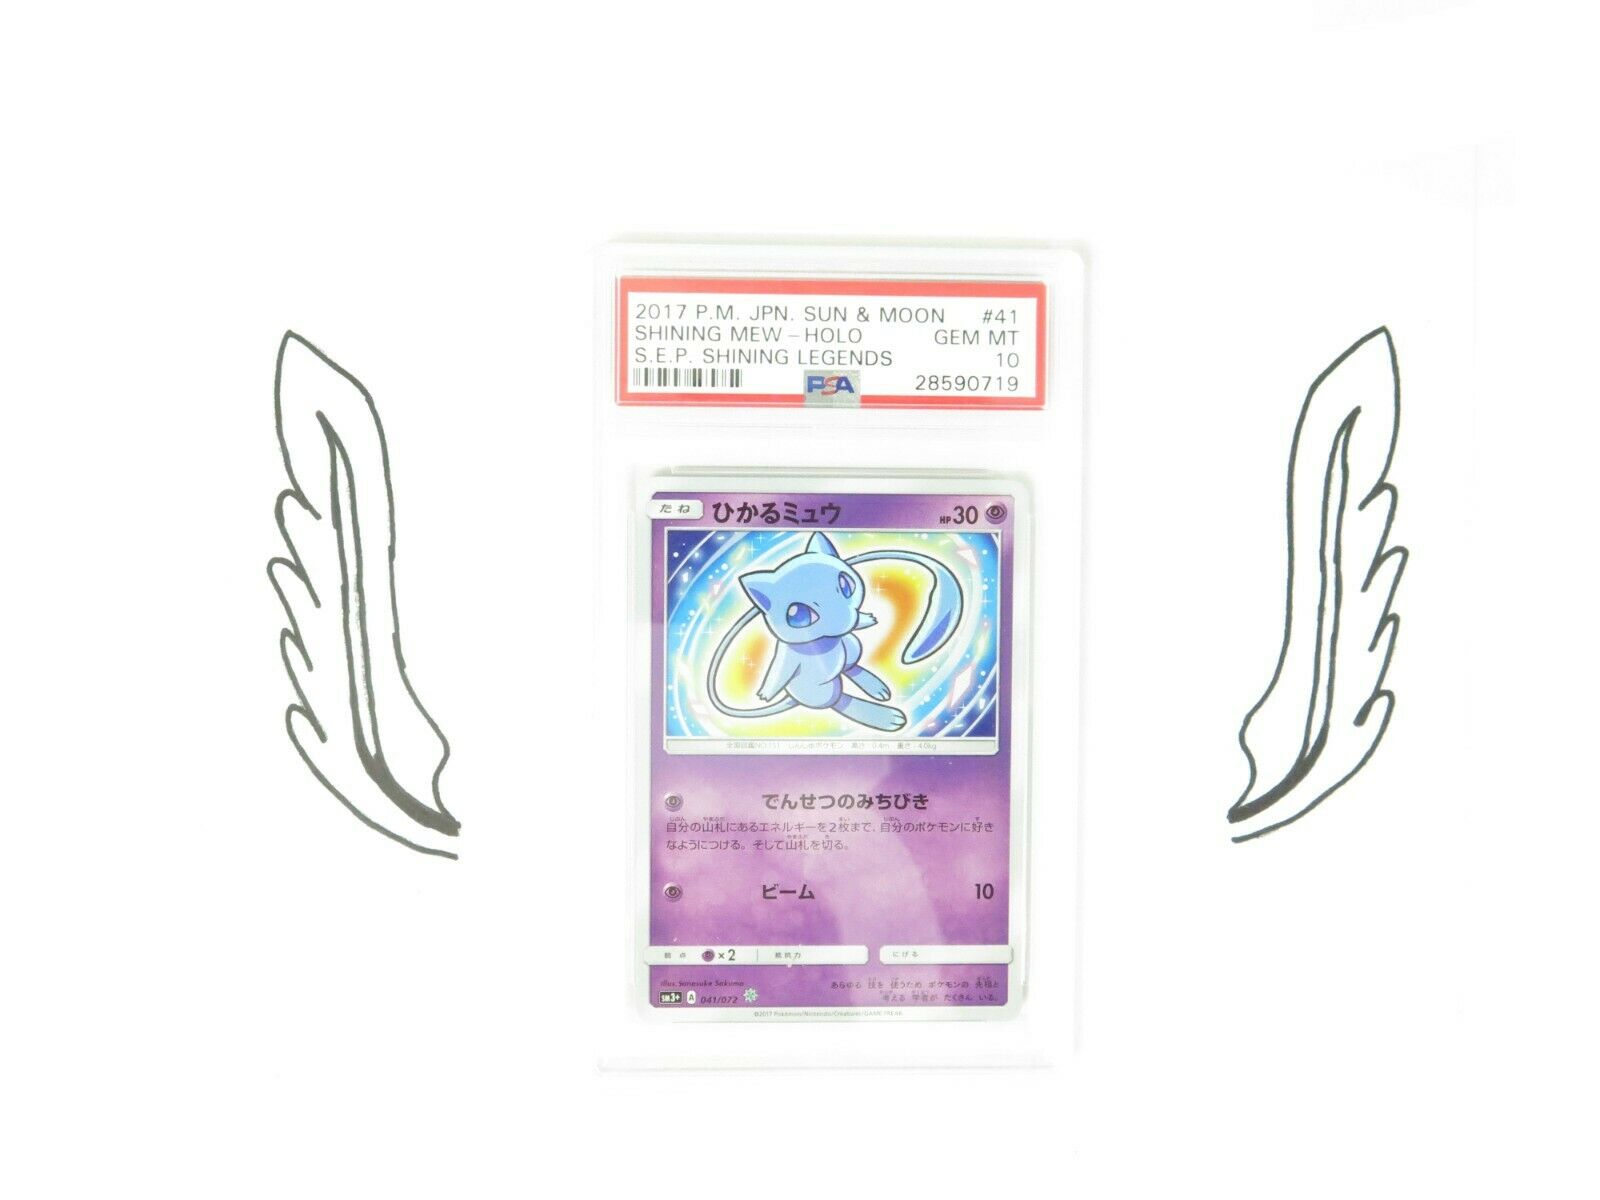 Pokemon PSA 10 Japanese Shining Legends Shining Mew Holo 041072 Single